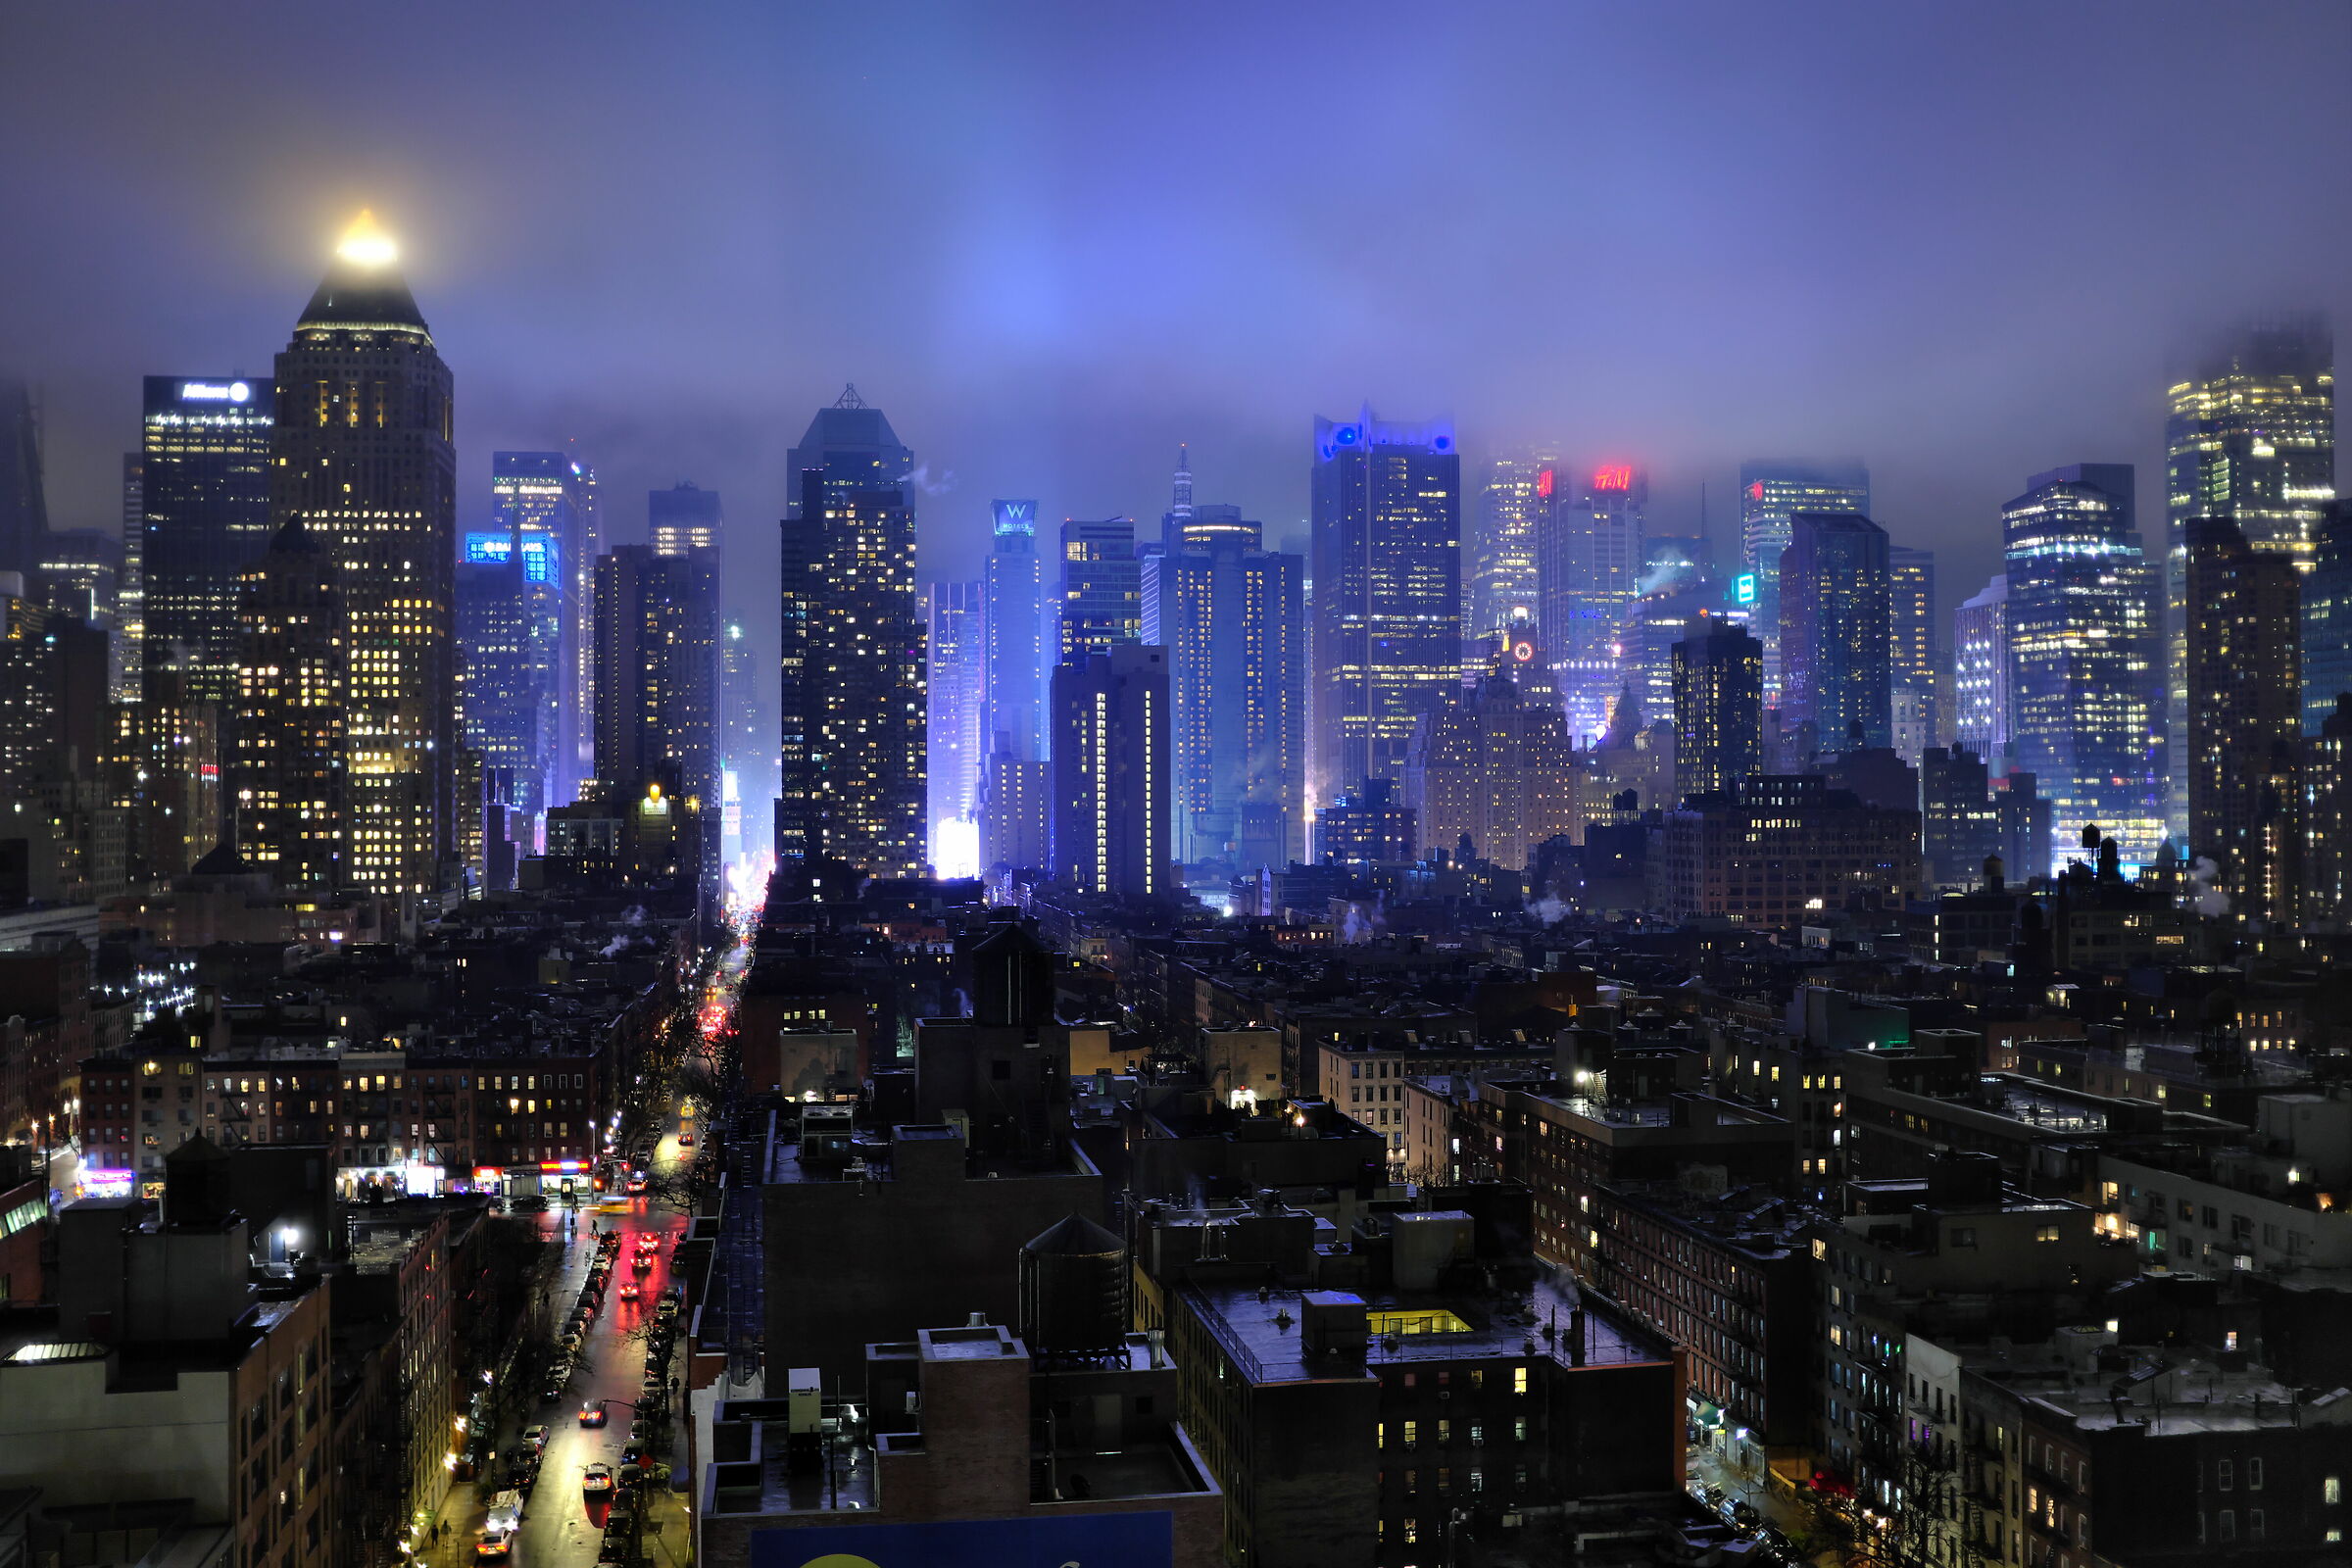 Lights in New York...